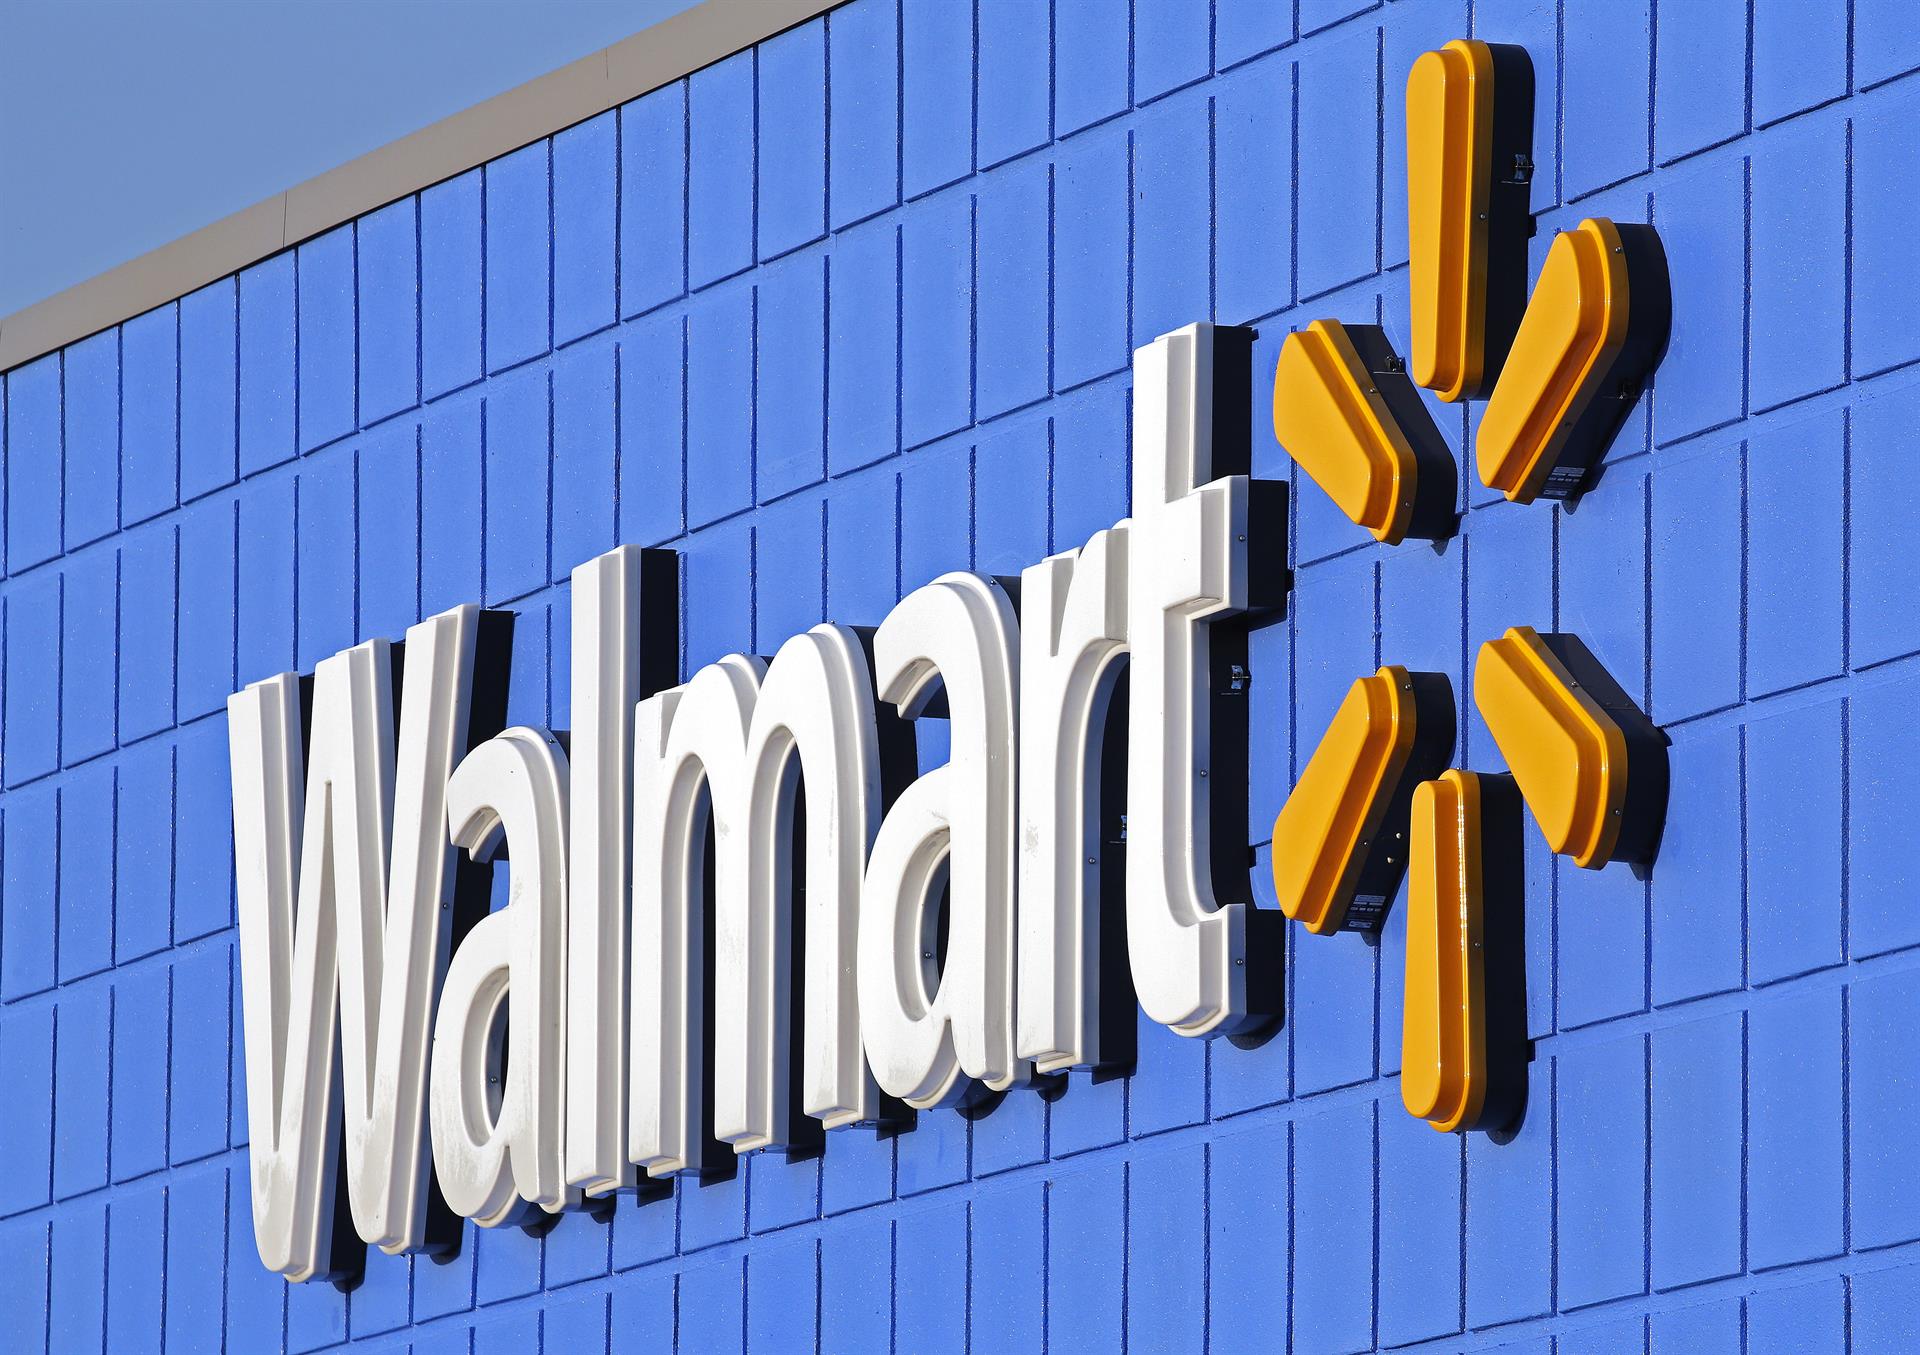 Vista del logo de Walmart en una de sus tiendas, en una fotografía de archivo. EFE/Larry W. Smith